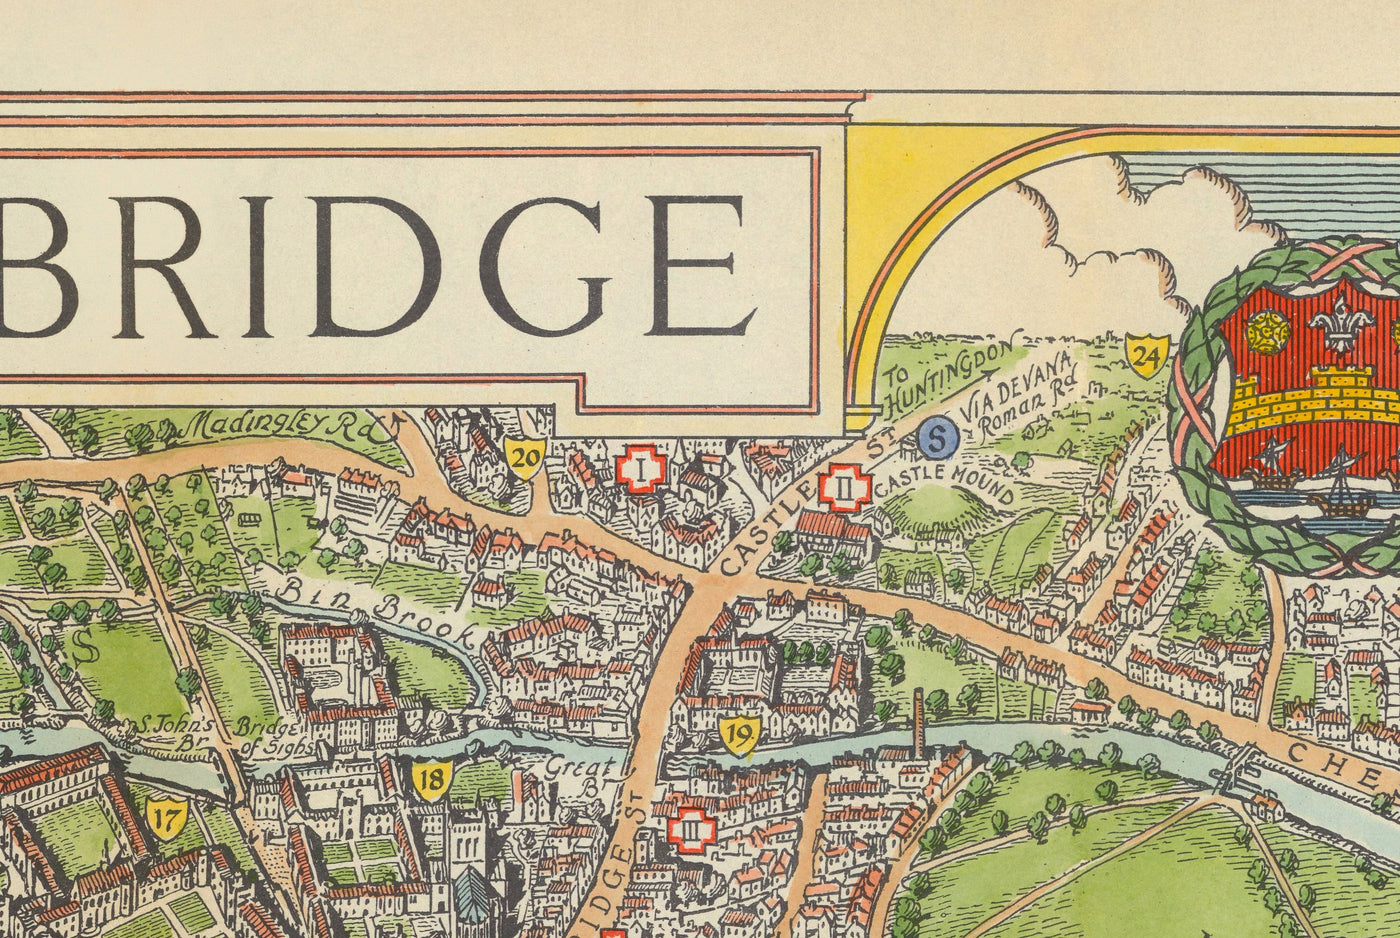 Mapa antiguo de Cambridge, 1929 - Trinidad, San Juan, Rey, Peterhouse, Jesús - Universidad y colegios